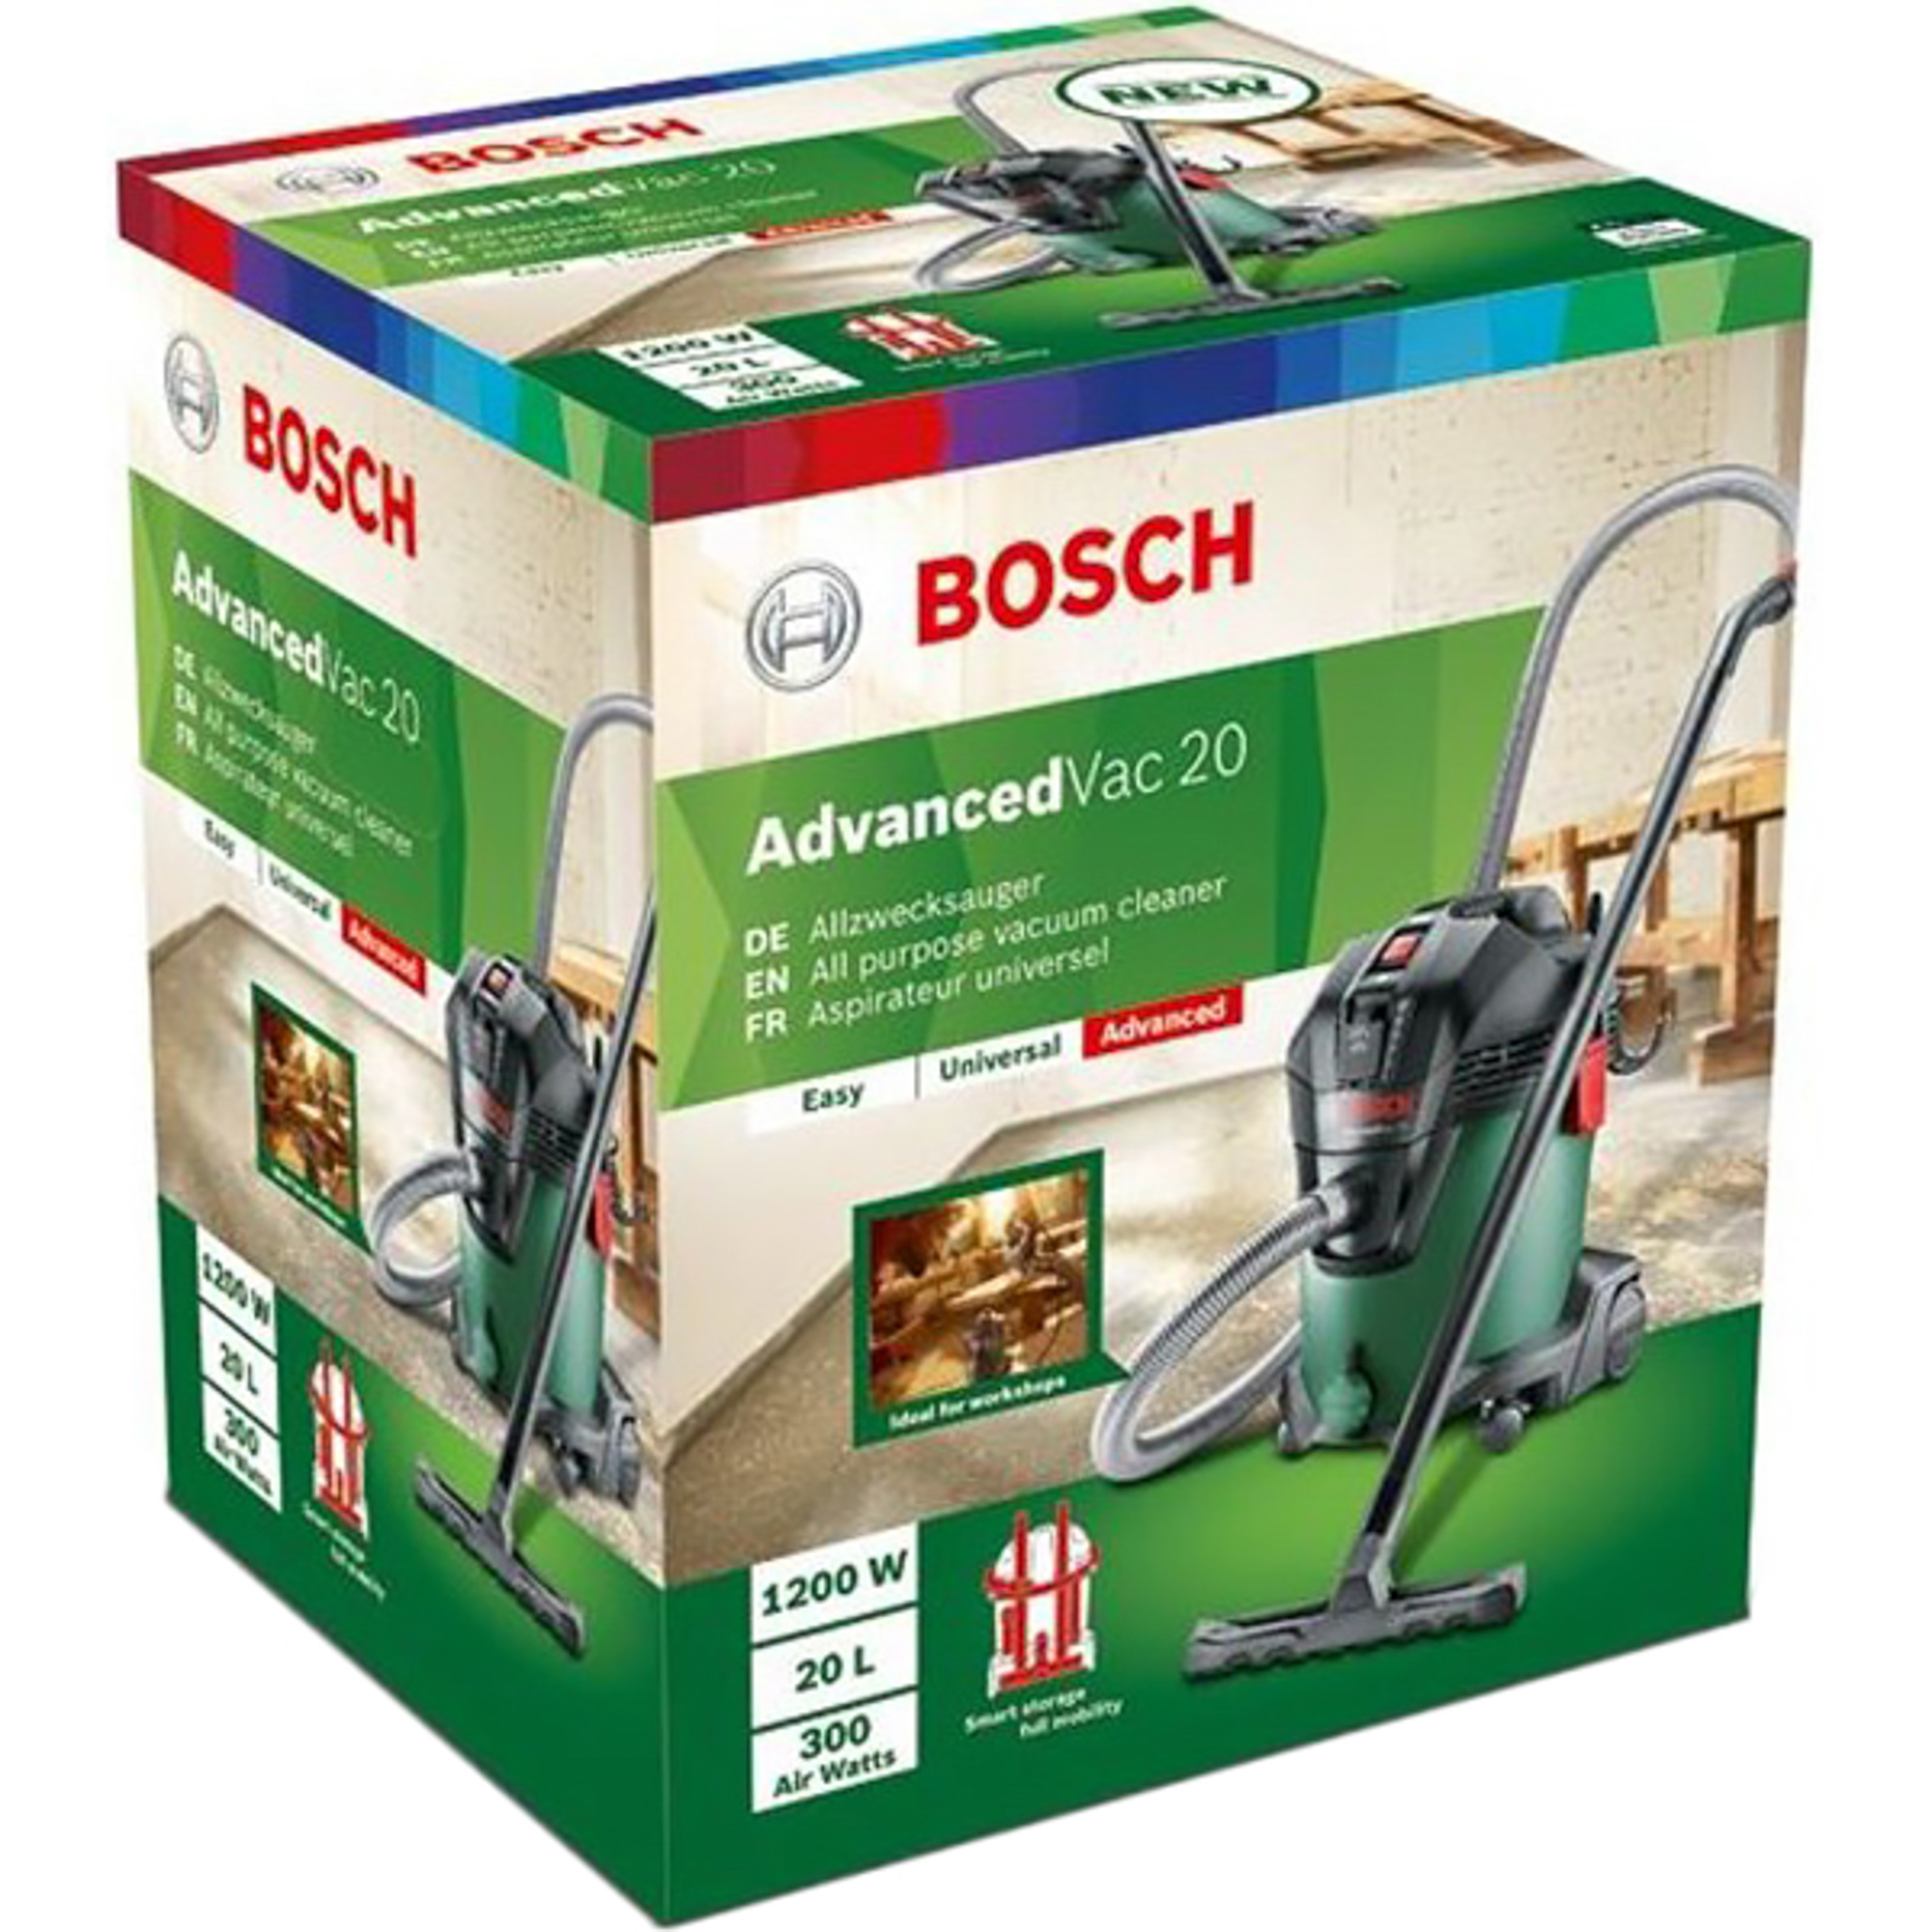 Пылесос Bosch AdvancedVac 20, цвет зеленый 06033D1200 - фото 3